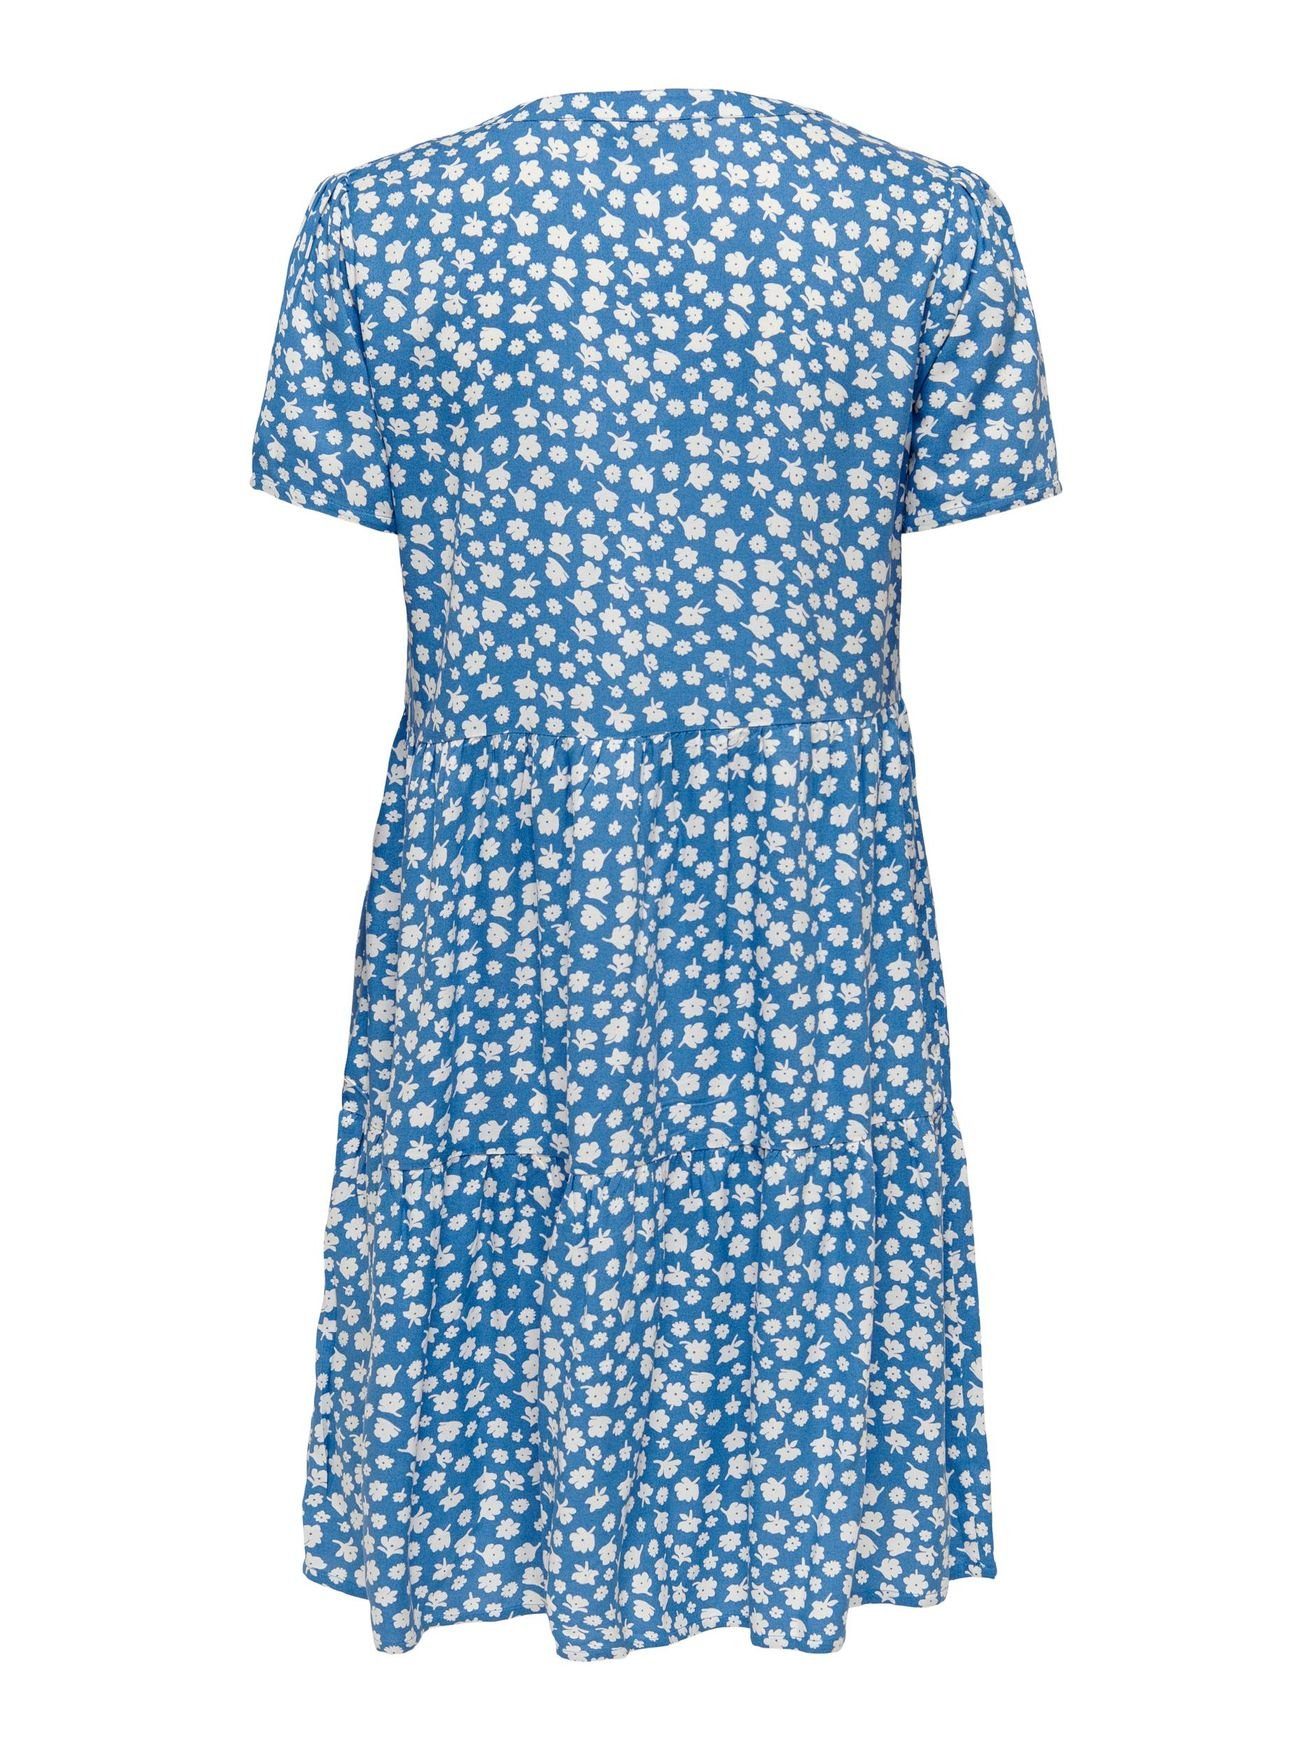 ONLY Shirtkleid Kurzes in 4928 Blau Blusen V-Ausschnitt (knielang) Kleid ONLZALLY